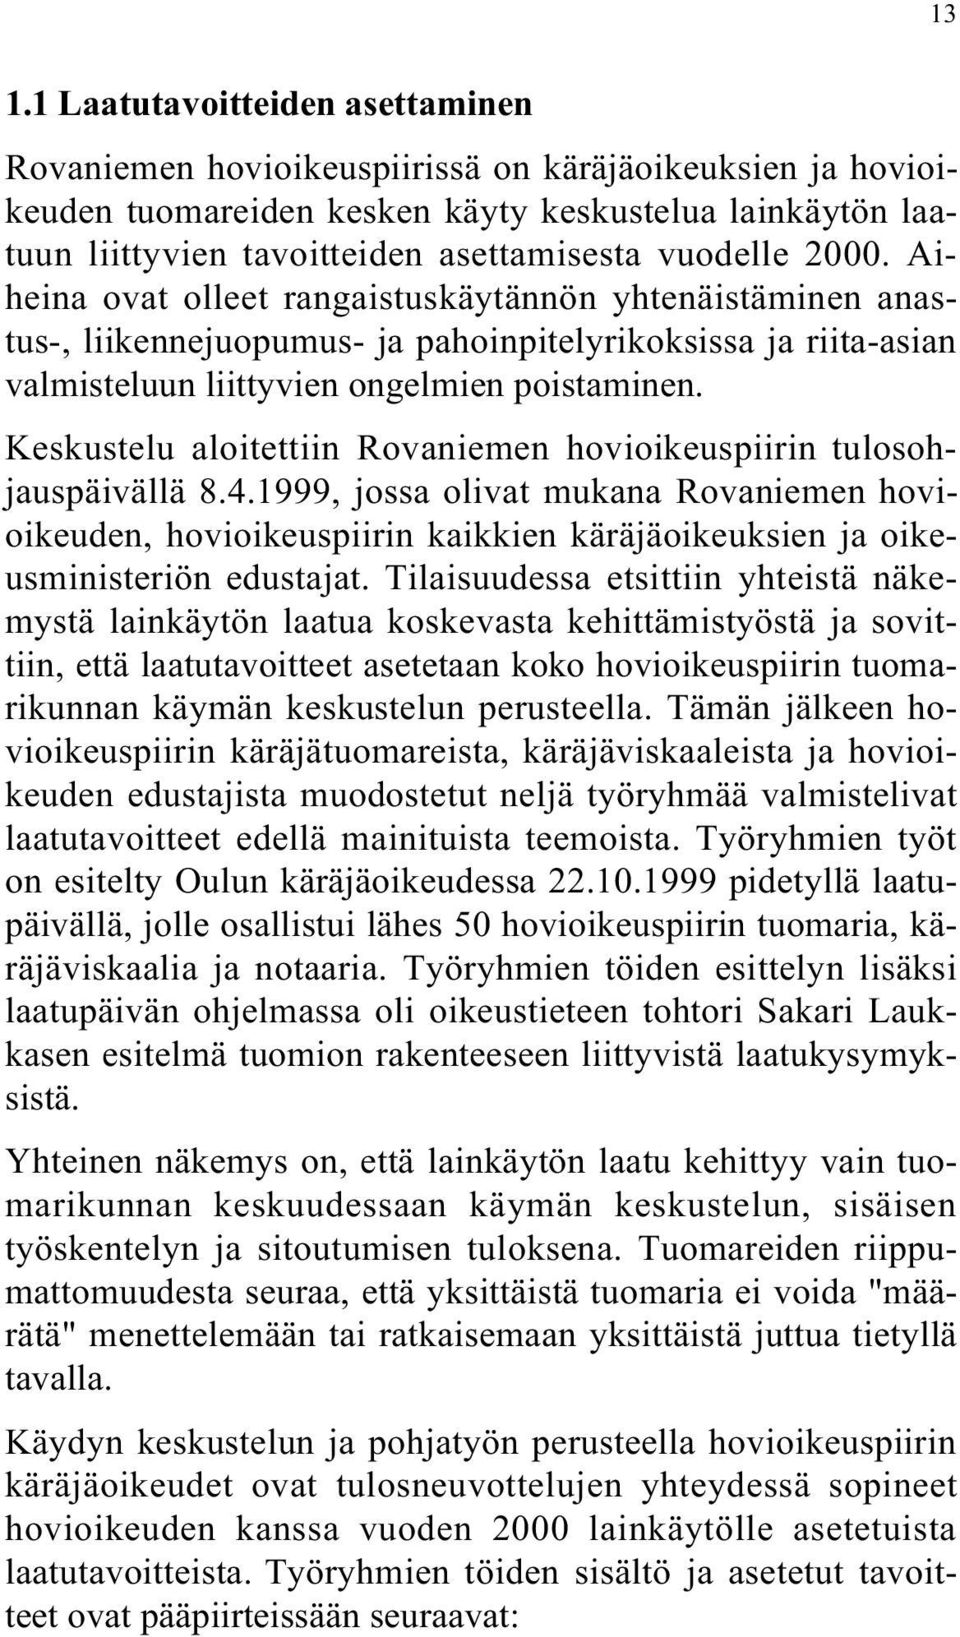 Keskustelu aloitettiin Rovaniemen hovioikeuspiirin tulosohjauspäivällä 8.4.1999, jossa olivat mukana Rovaniemen hovioikeuden, hovioikeuspiirin kaikkien käräjäoikeuksien ja oikeusministeriön edustajat.